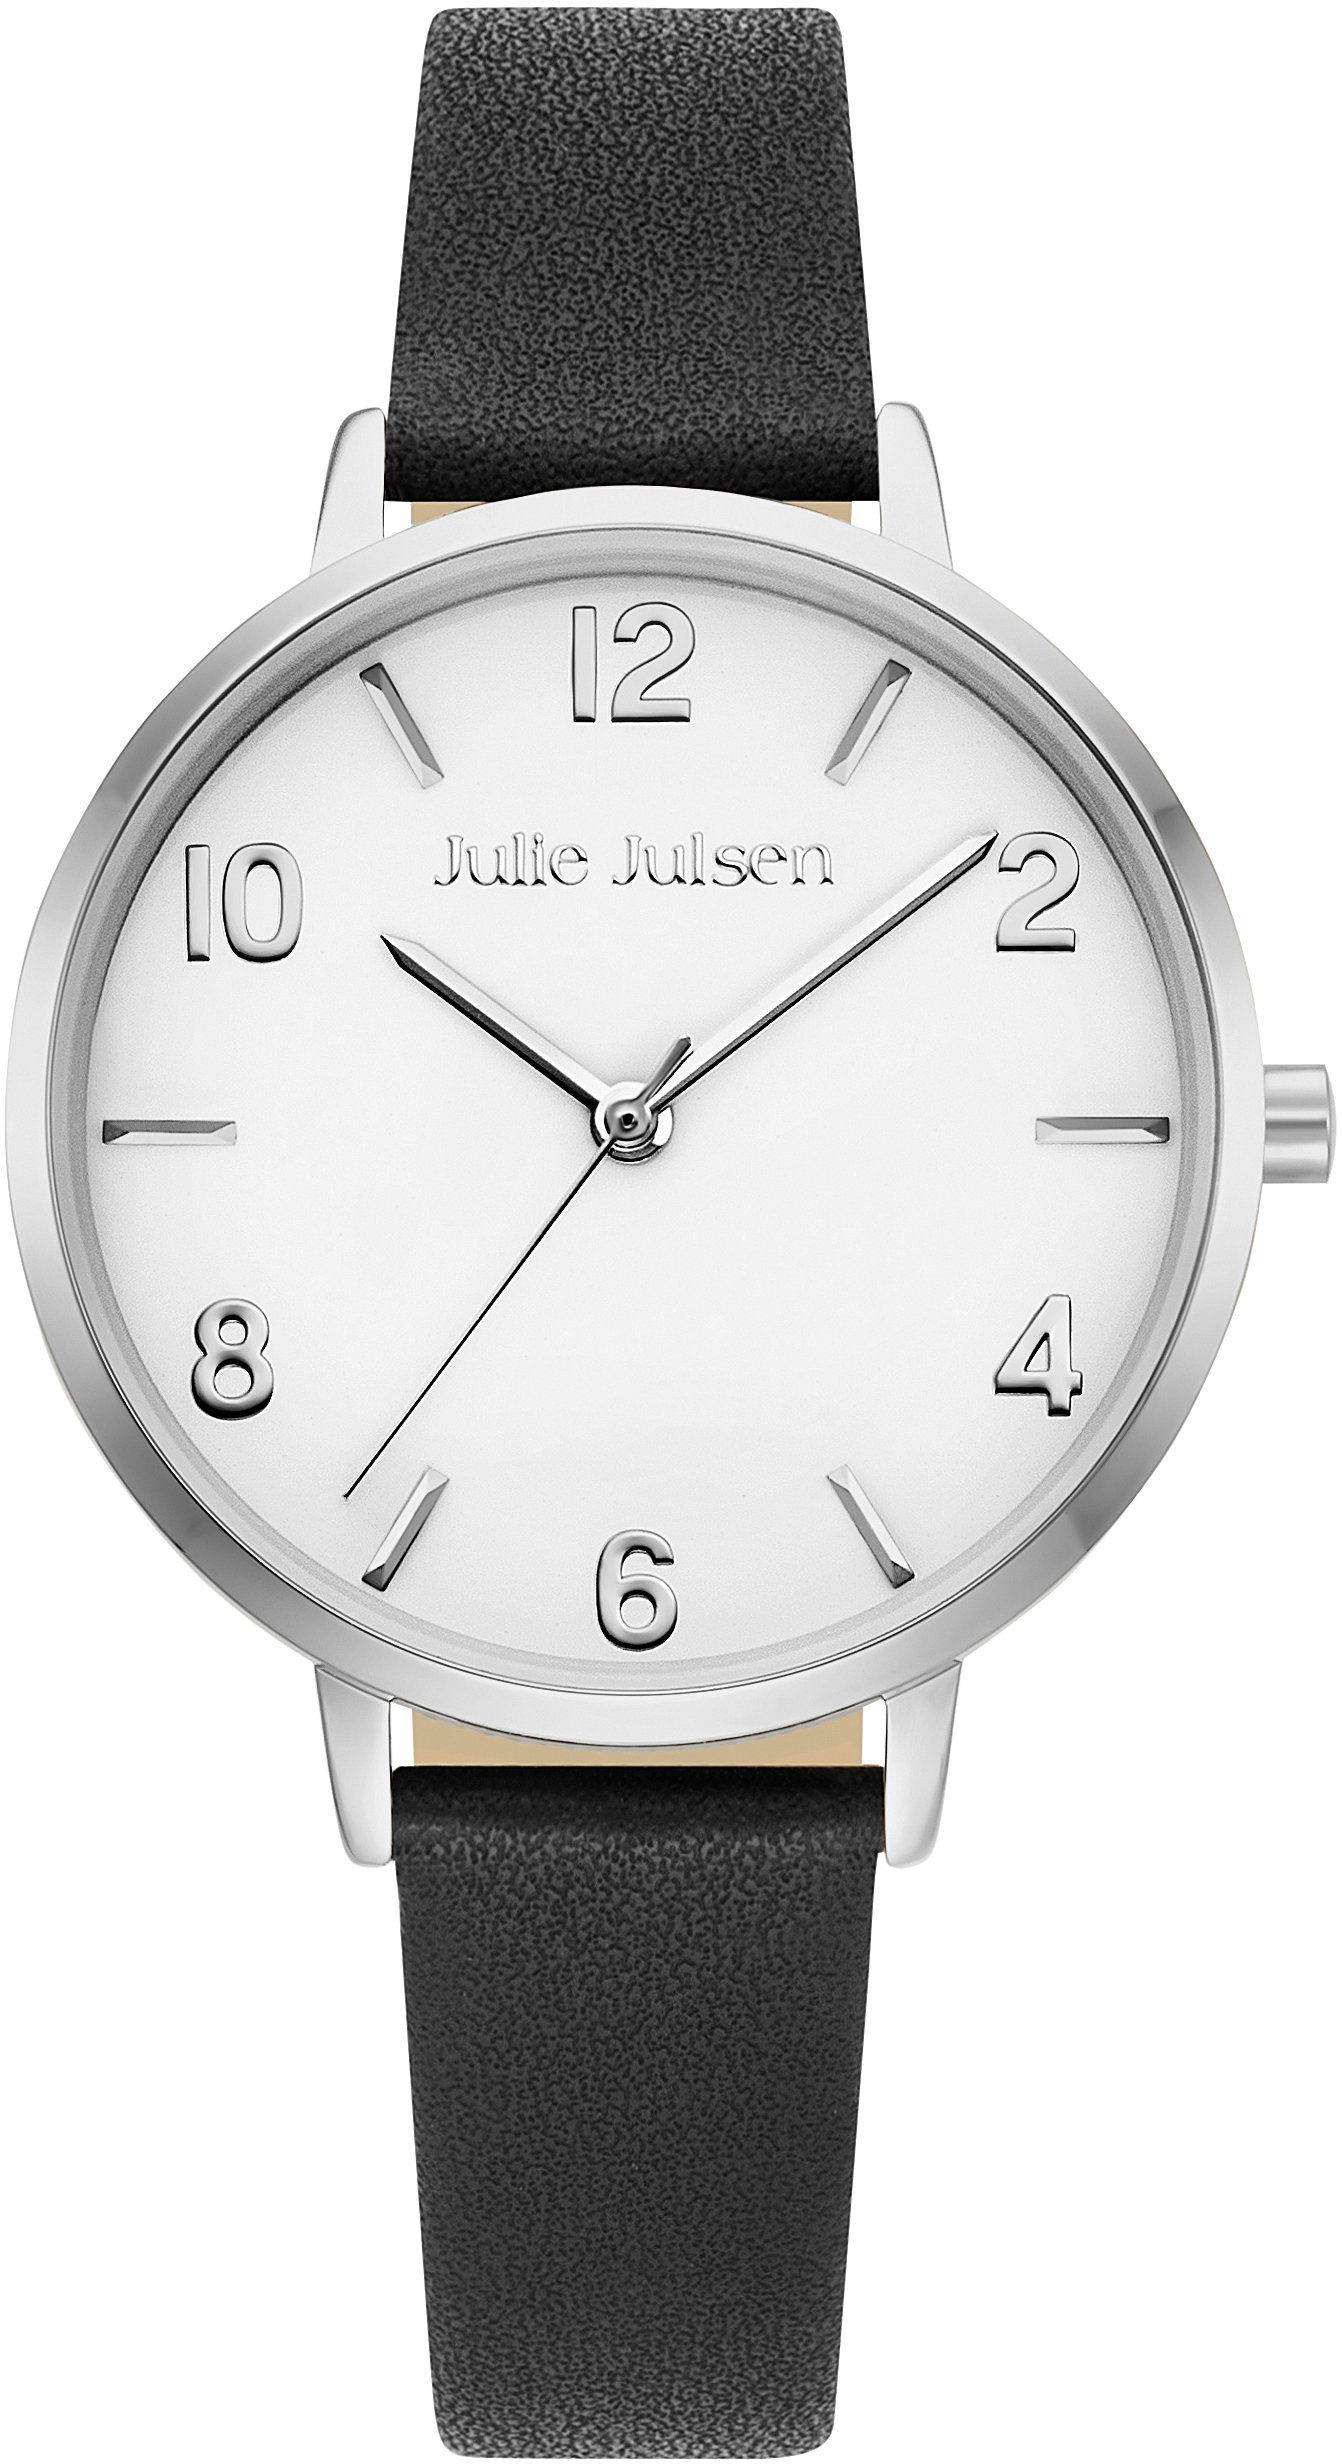 Julie Julsen Quarzuhr BASIC SILVER BLACK, JJW1486SL-1, Armbanduhr, Damenuhr, PVD-beschichtet, Mineralglas